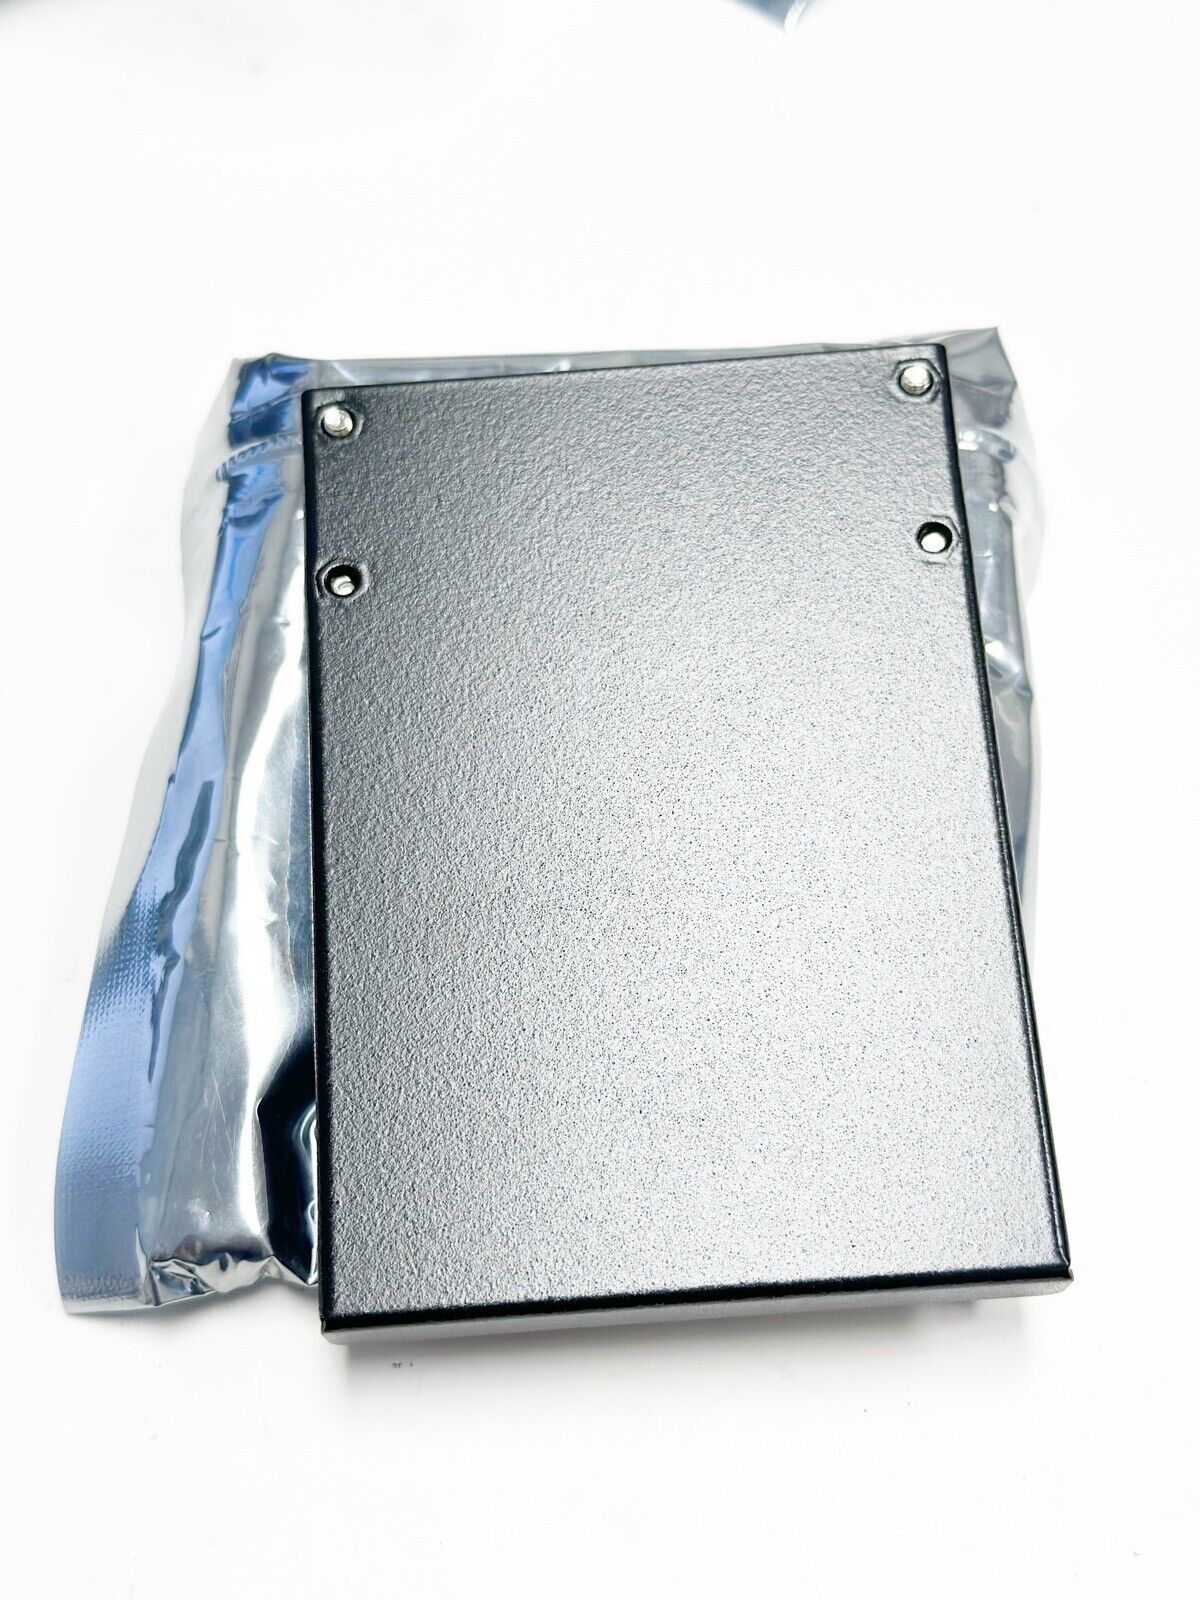 New Addonics 2.5" M2/mSATA SSD drive (model: AD25M2MSA) Addonics AD25M2MSA - фотография #3